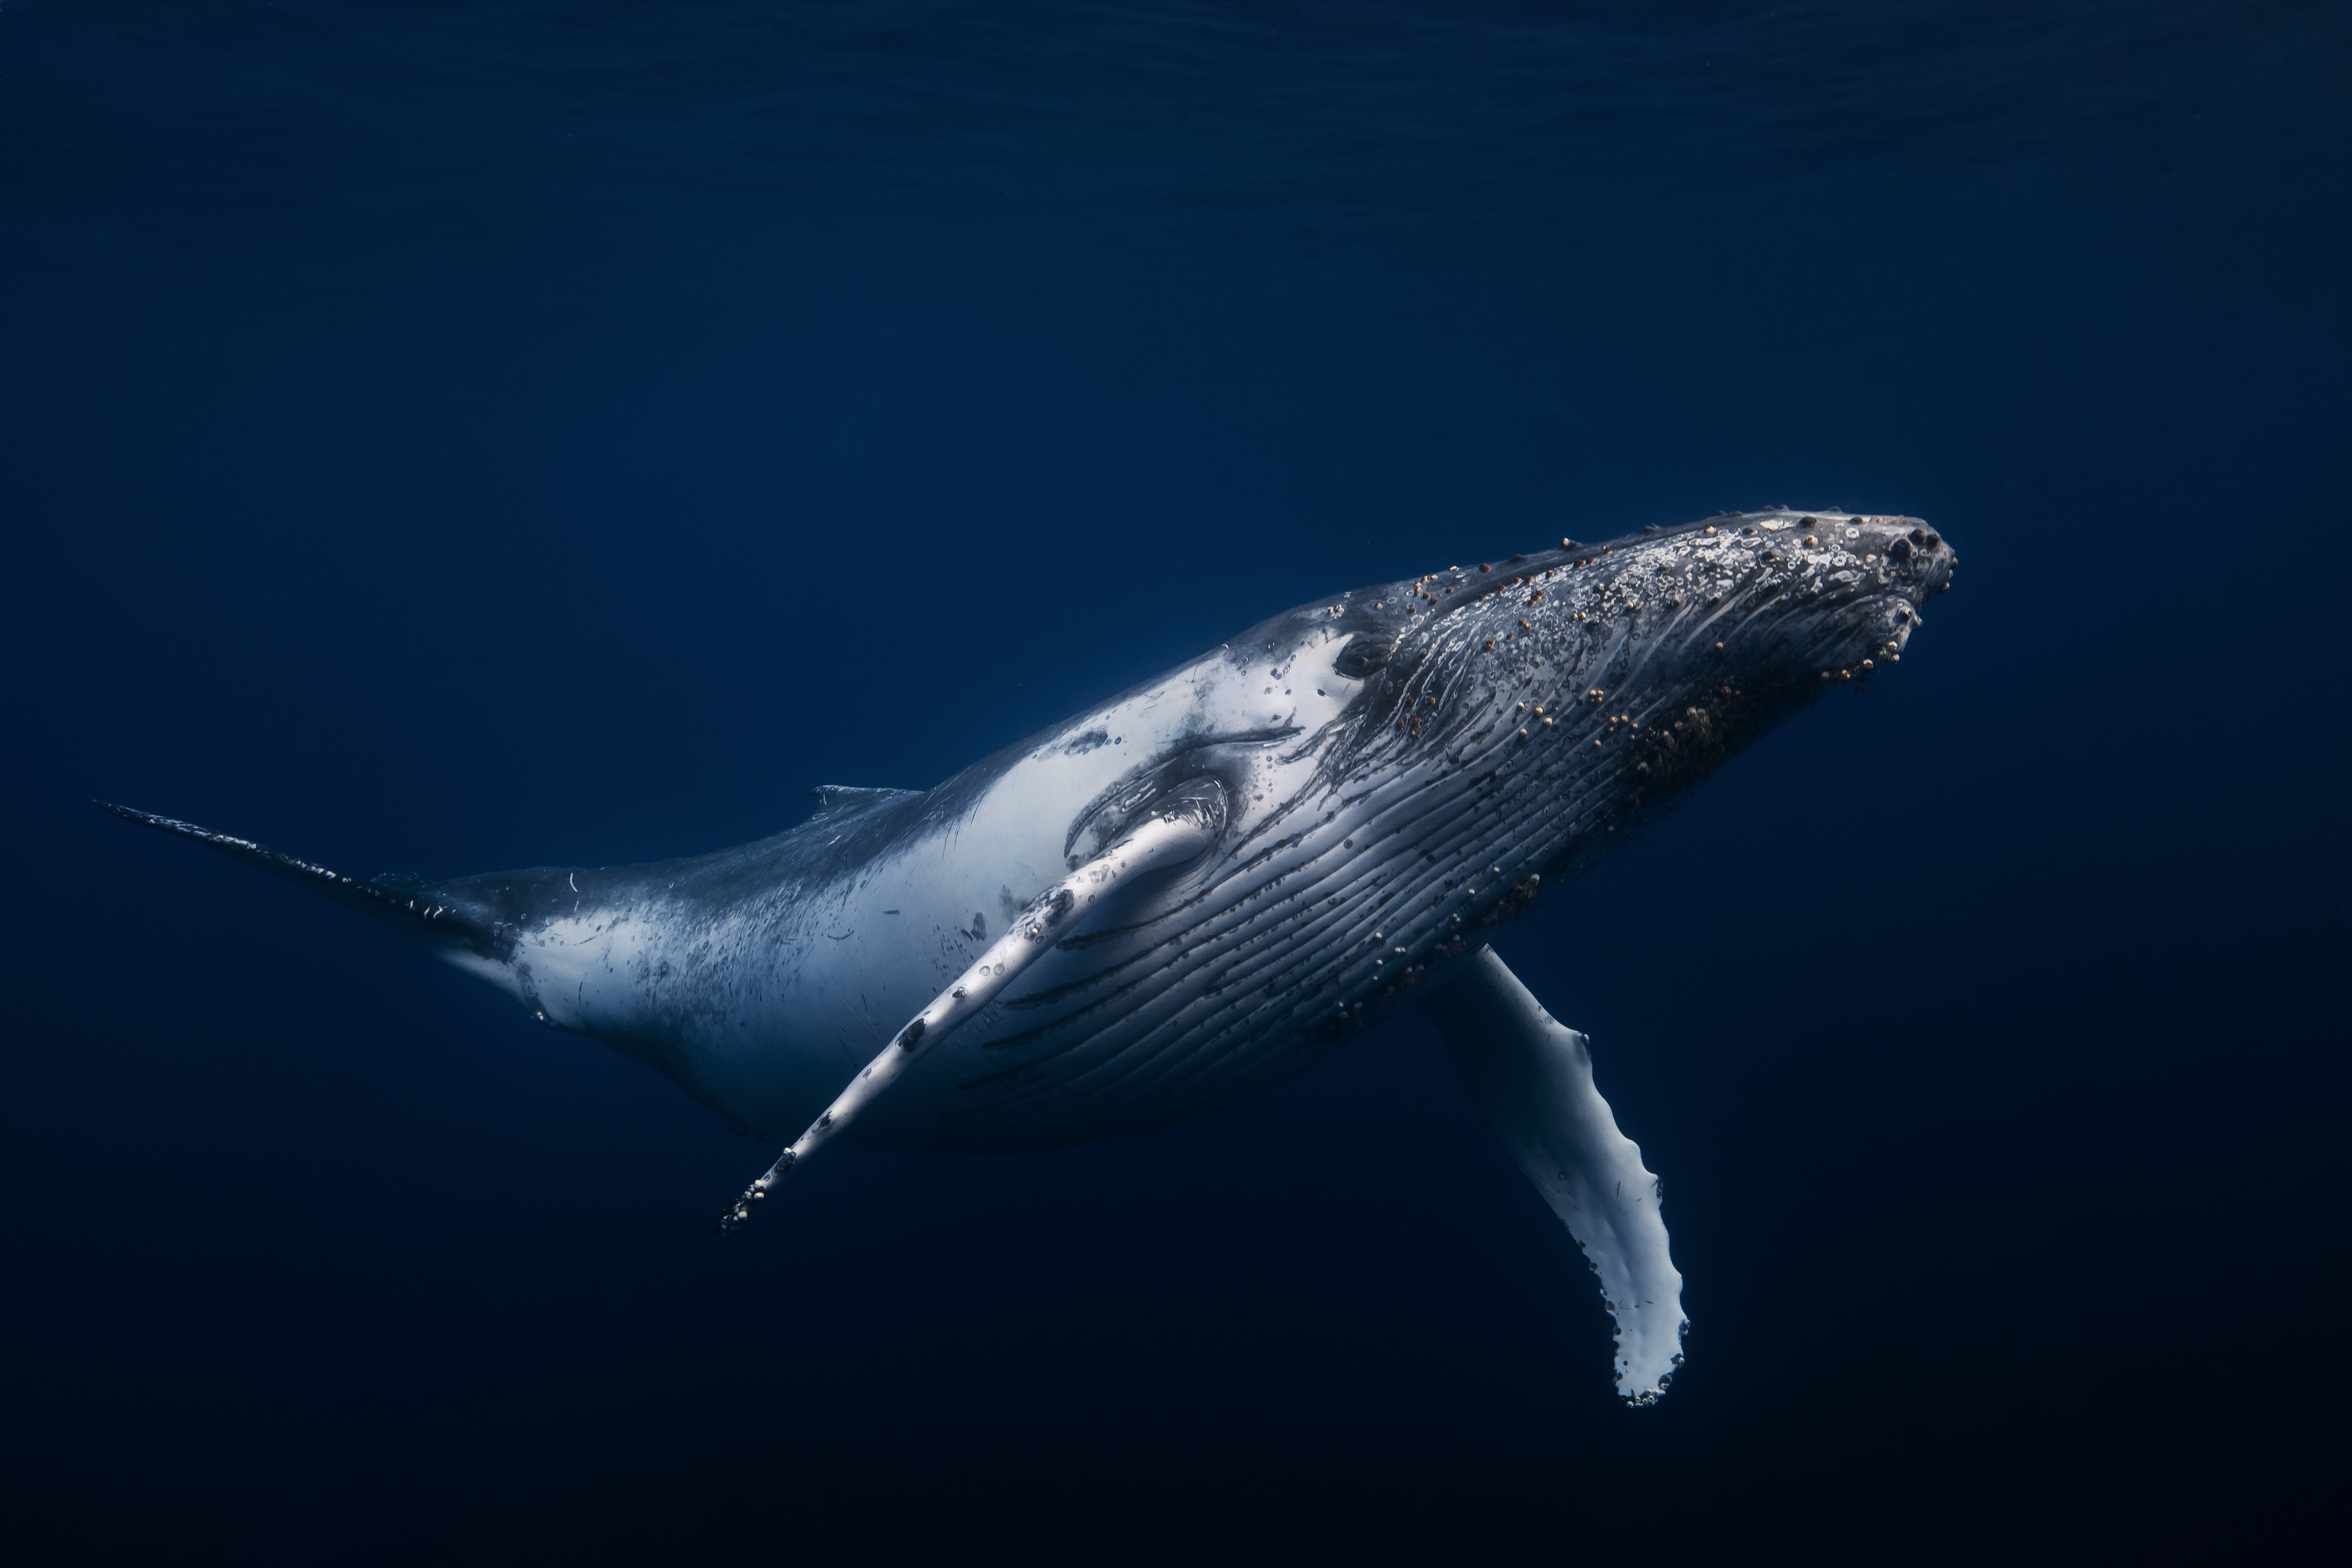 图片素材 : 水, 性质, 座头鲸, 脊椎动物, 海洋哺乳动物, 海洋生物学, 鲸鱼海豚和海豚, 灰鲸 4608x3072 ...